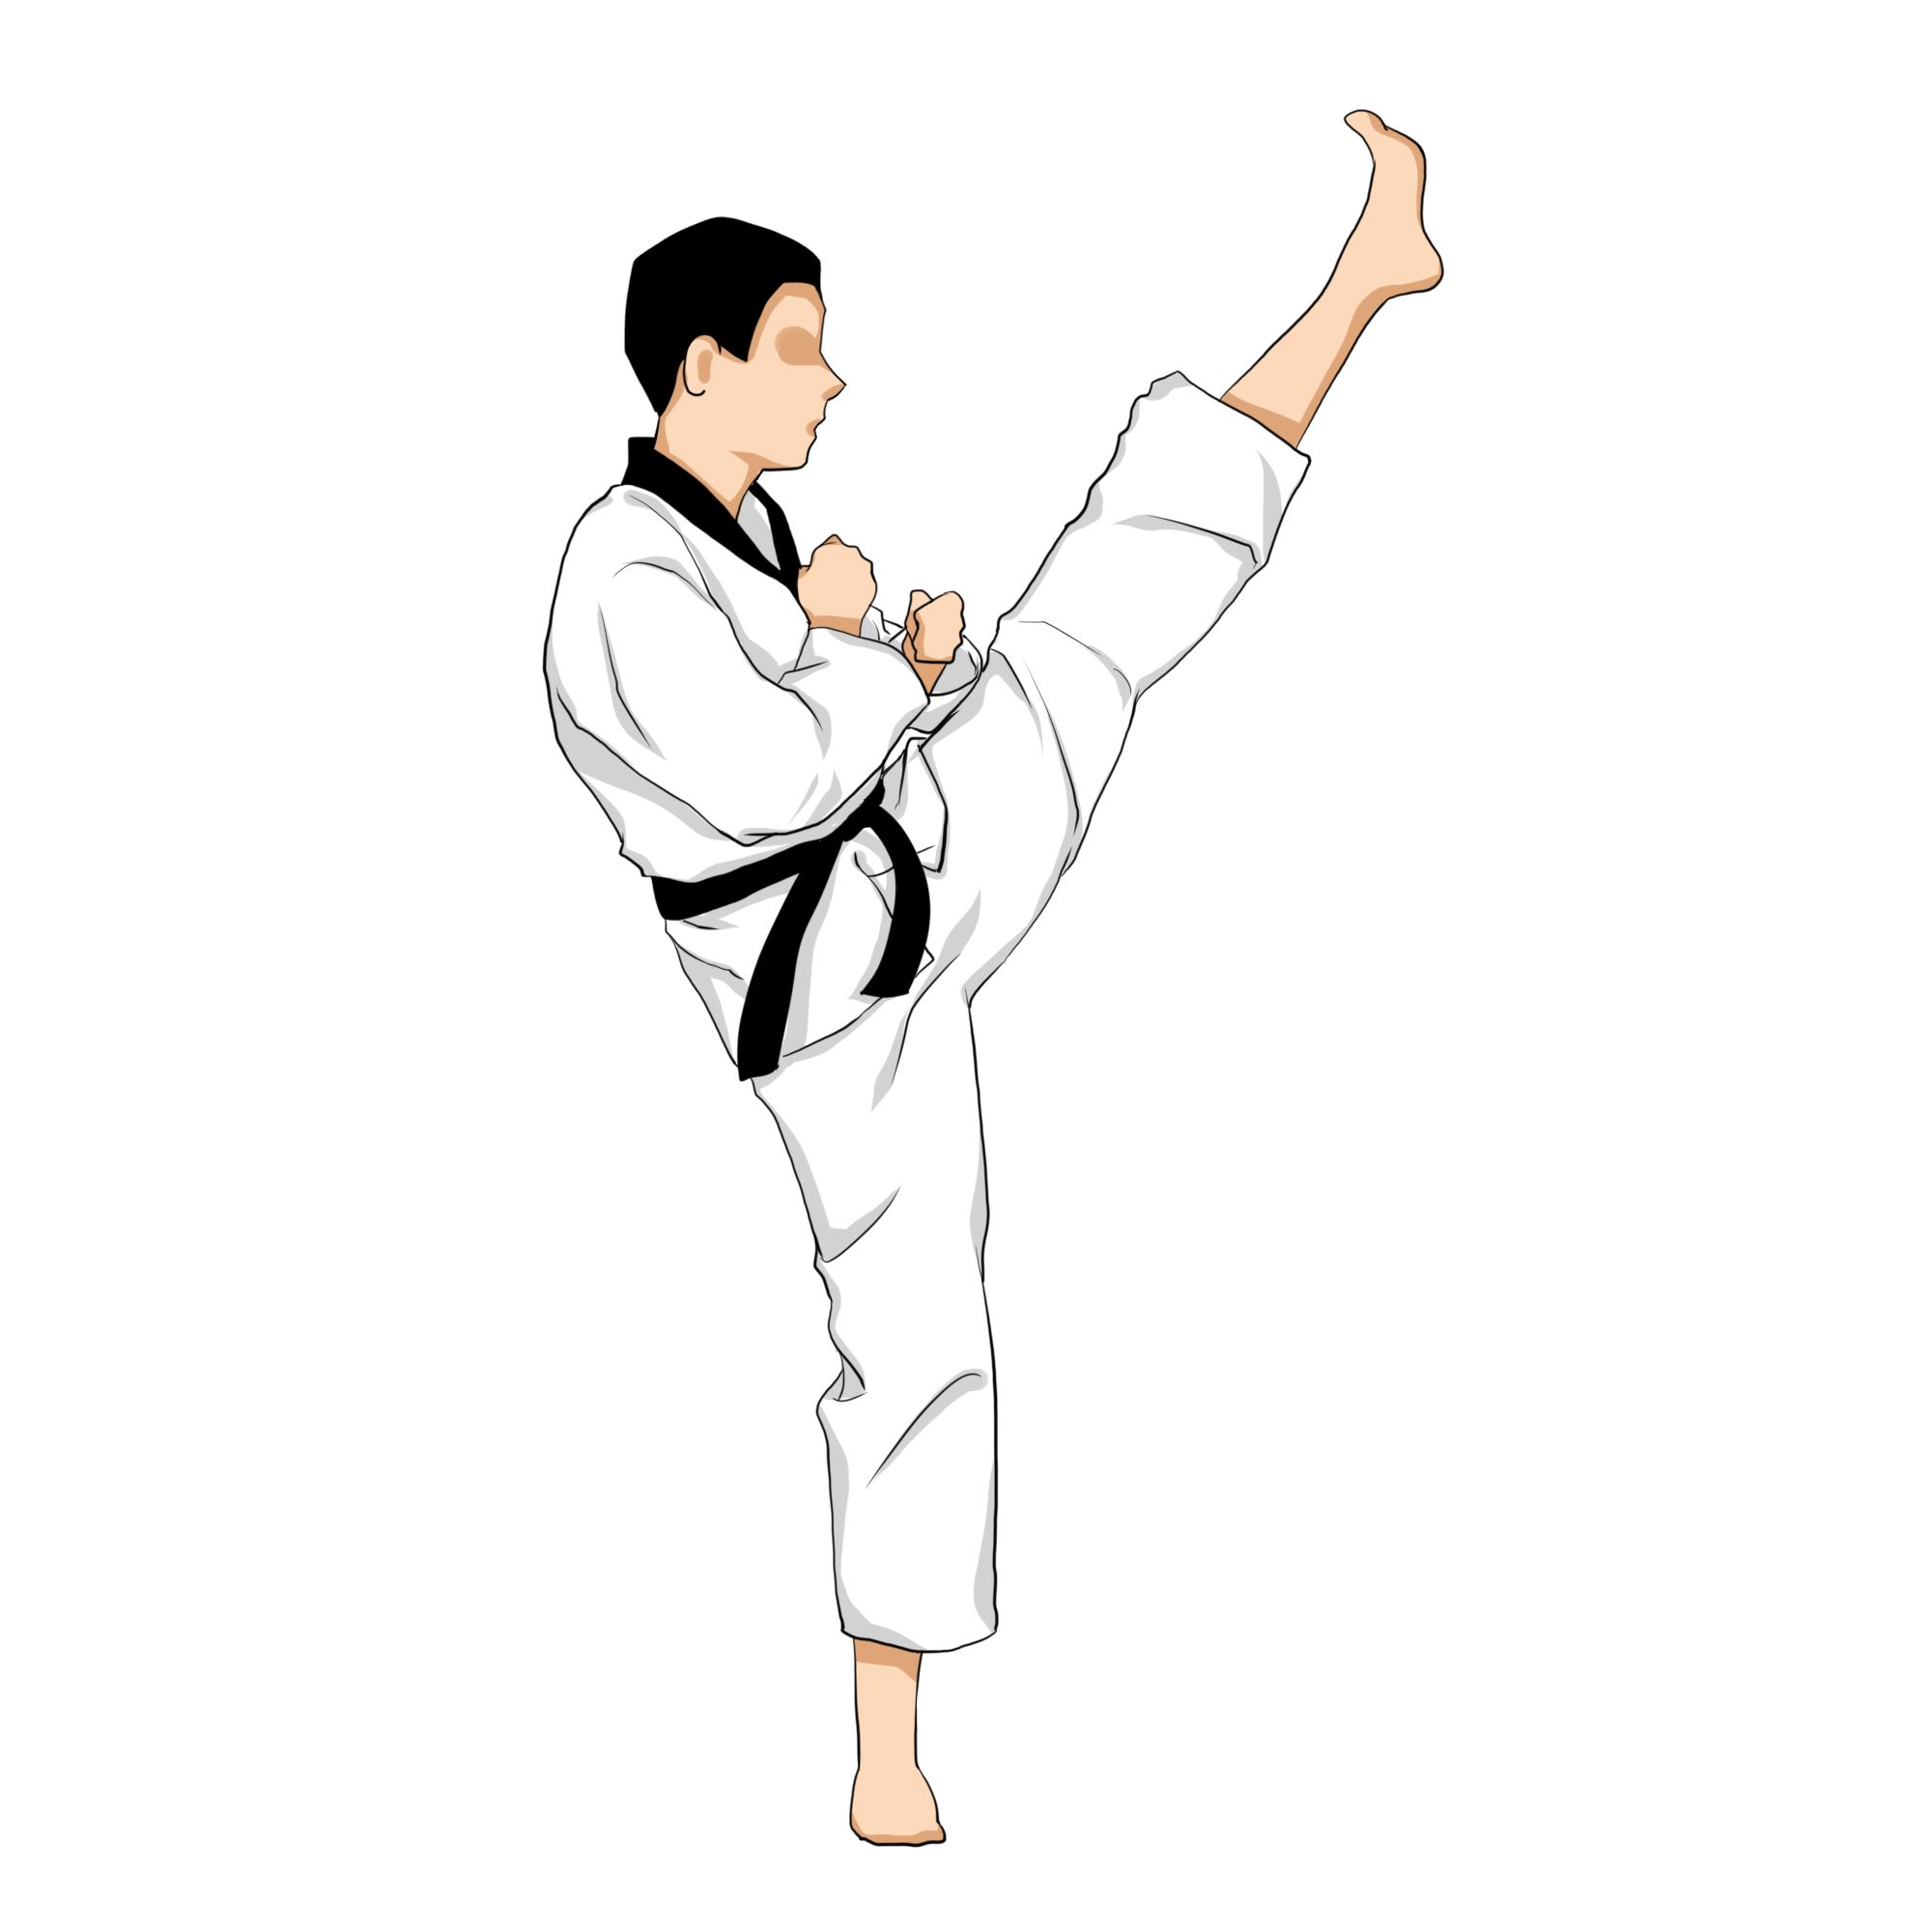 taekwondo-poomsae-front-kick